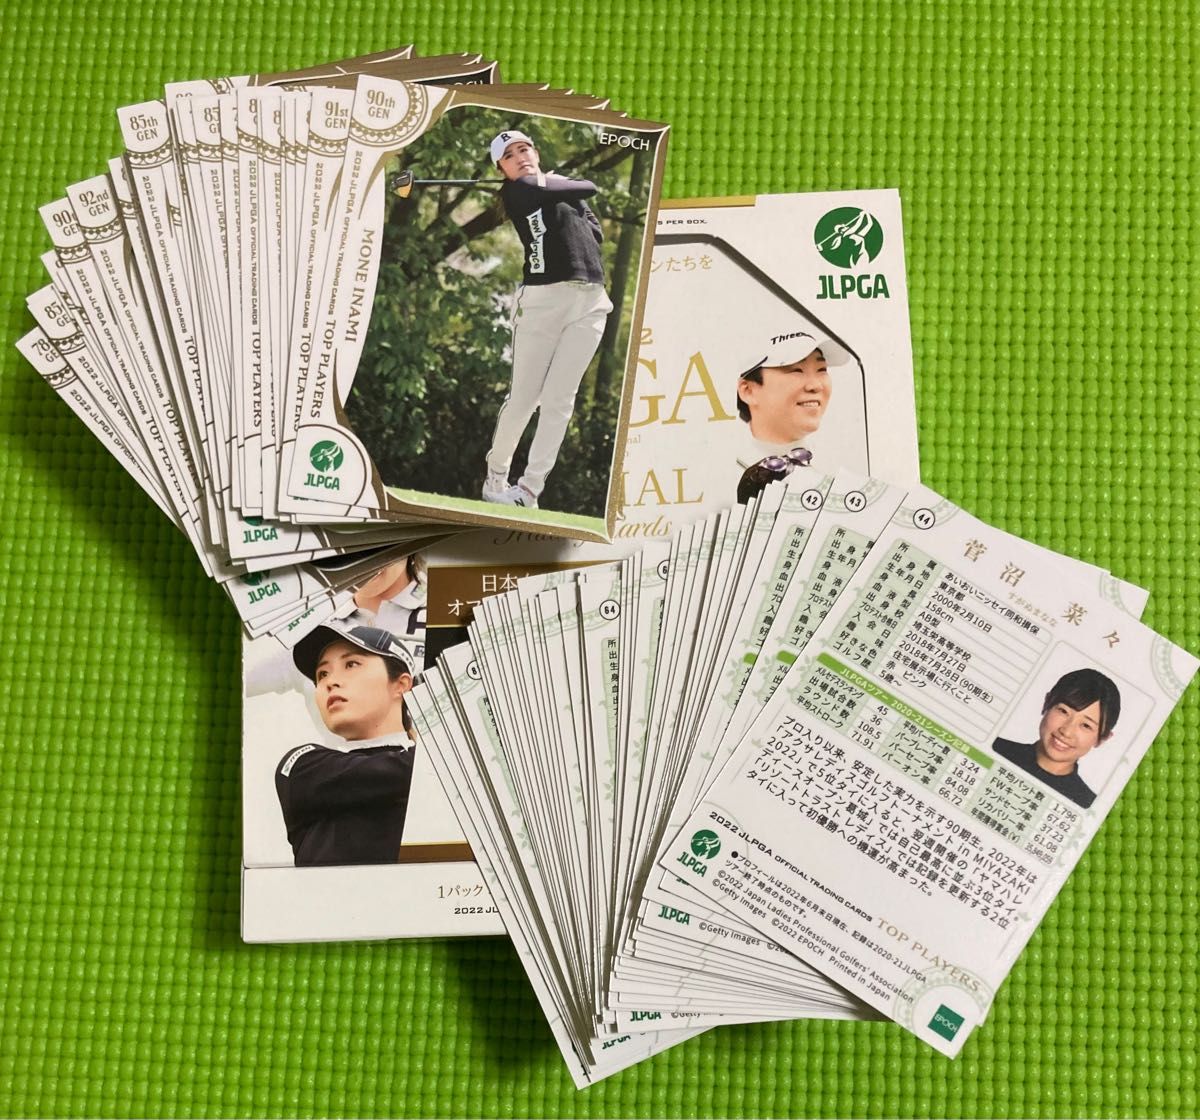 2022年日本女子プロゴルフ協会オフィシャルトレーディングカード、トッププロ総勢90名のレギュラーカード90枚コンプリートセット！